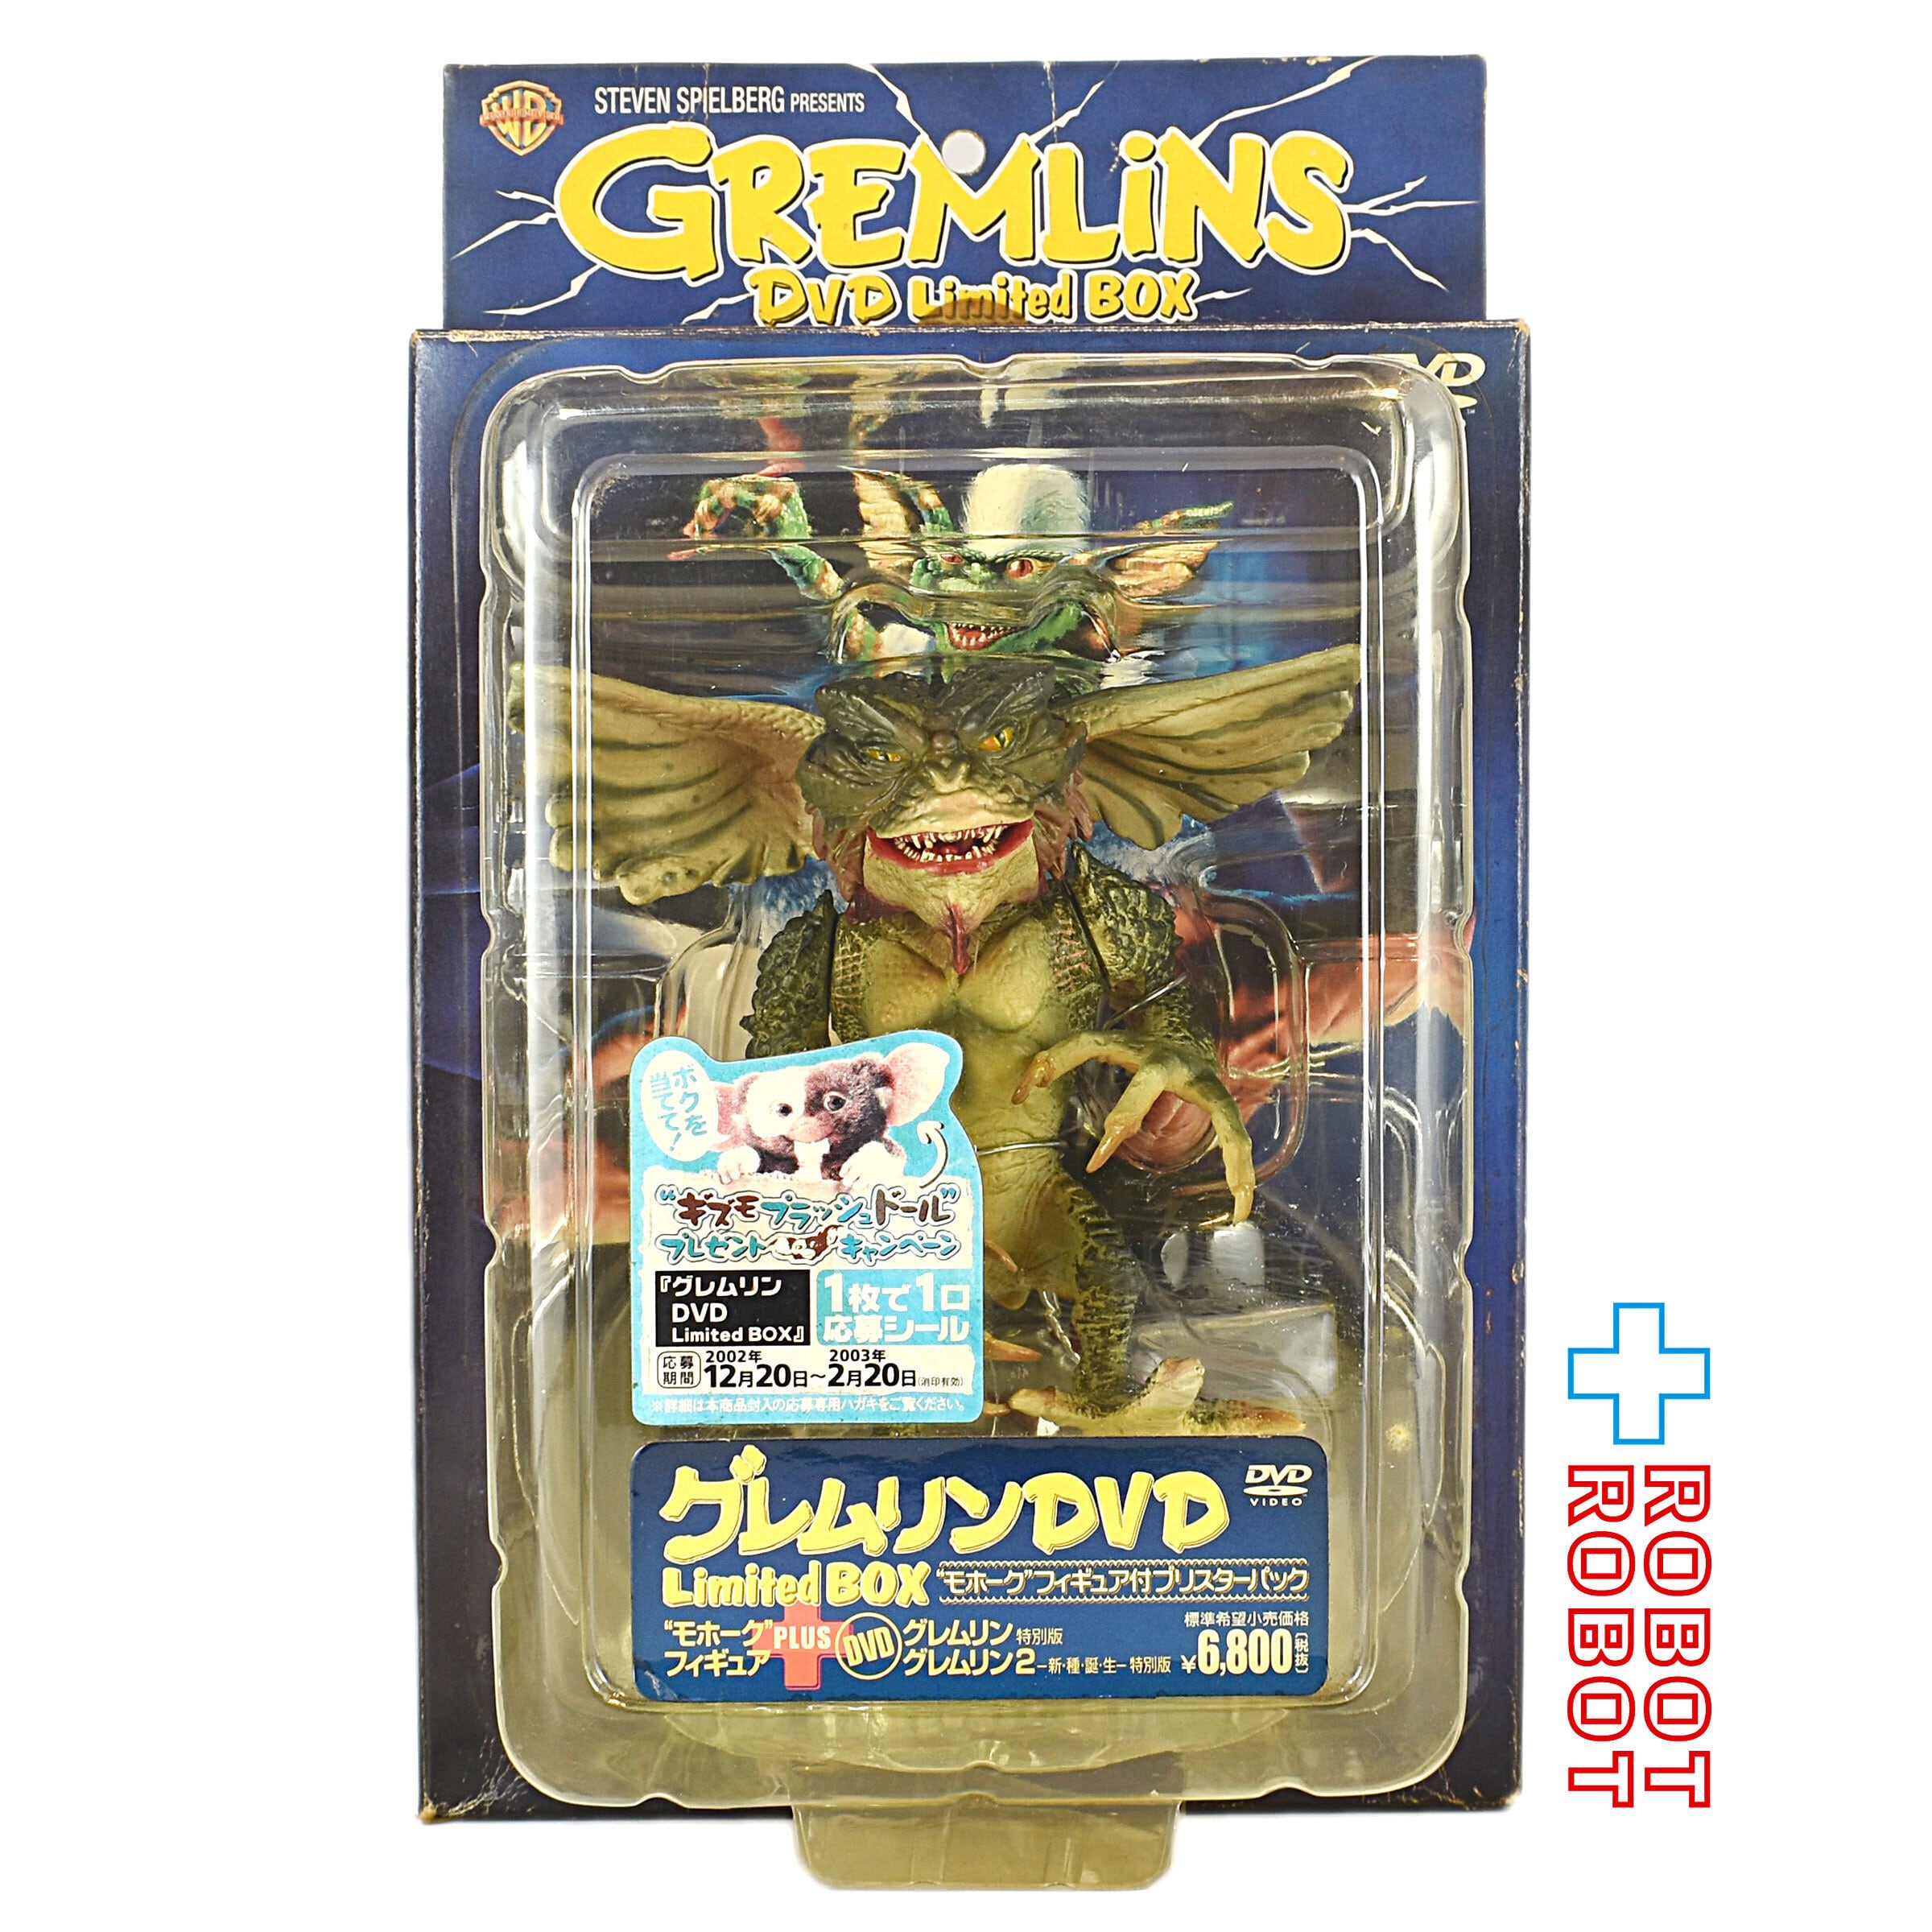 グレムリン DVD Limited Box モホーク フィギュア付ブリスターパック 